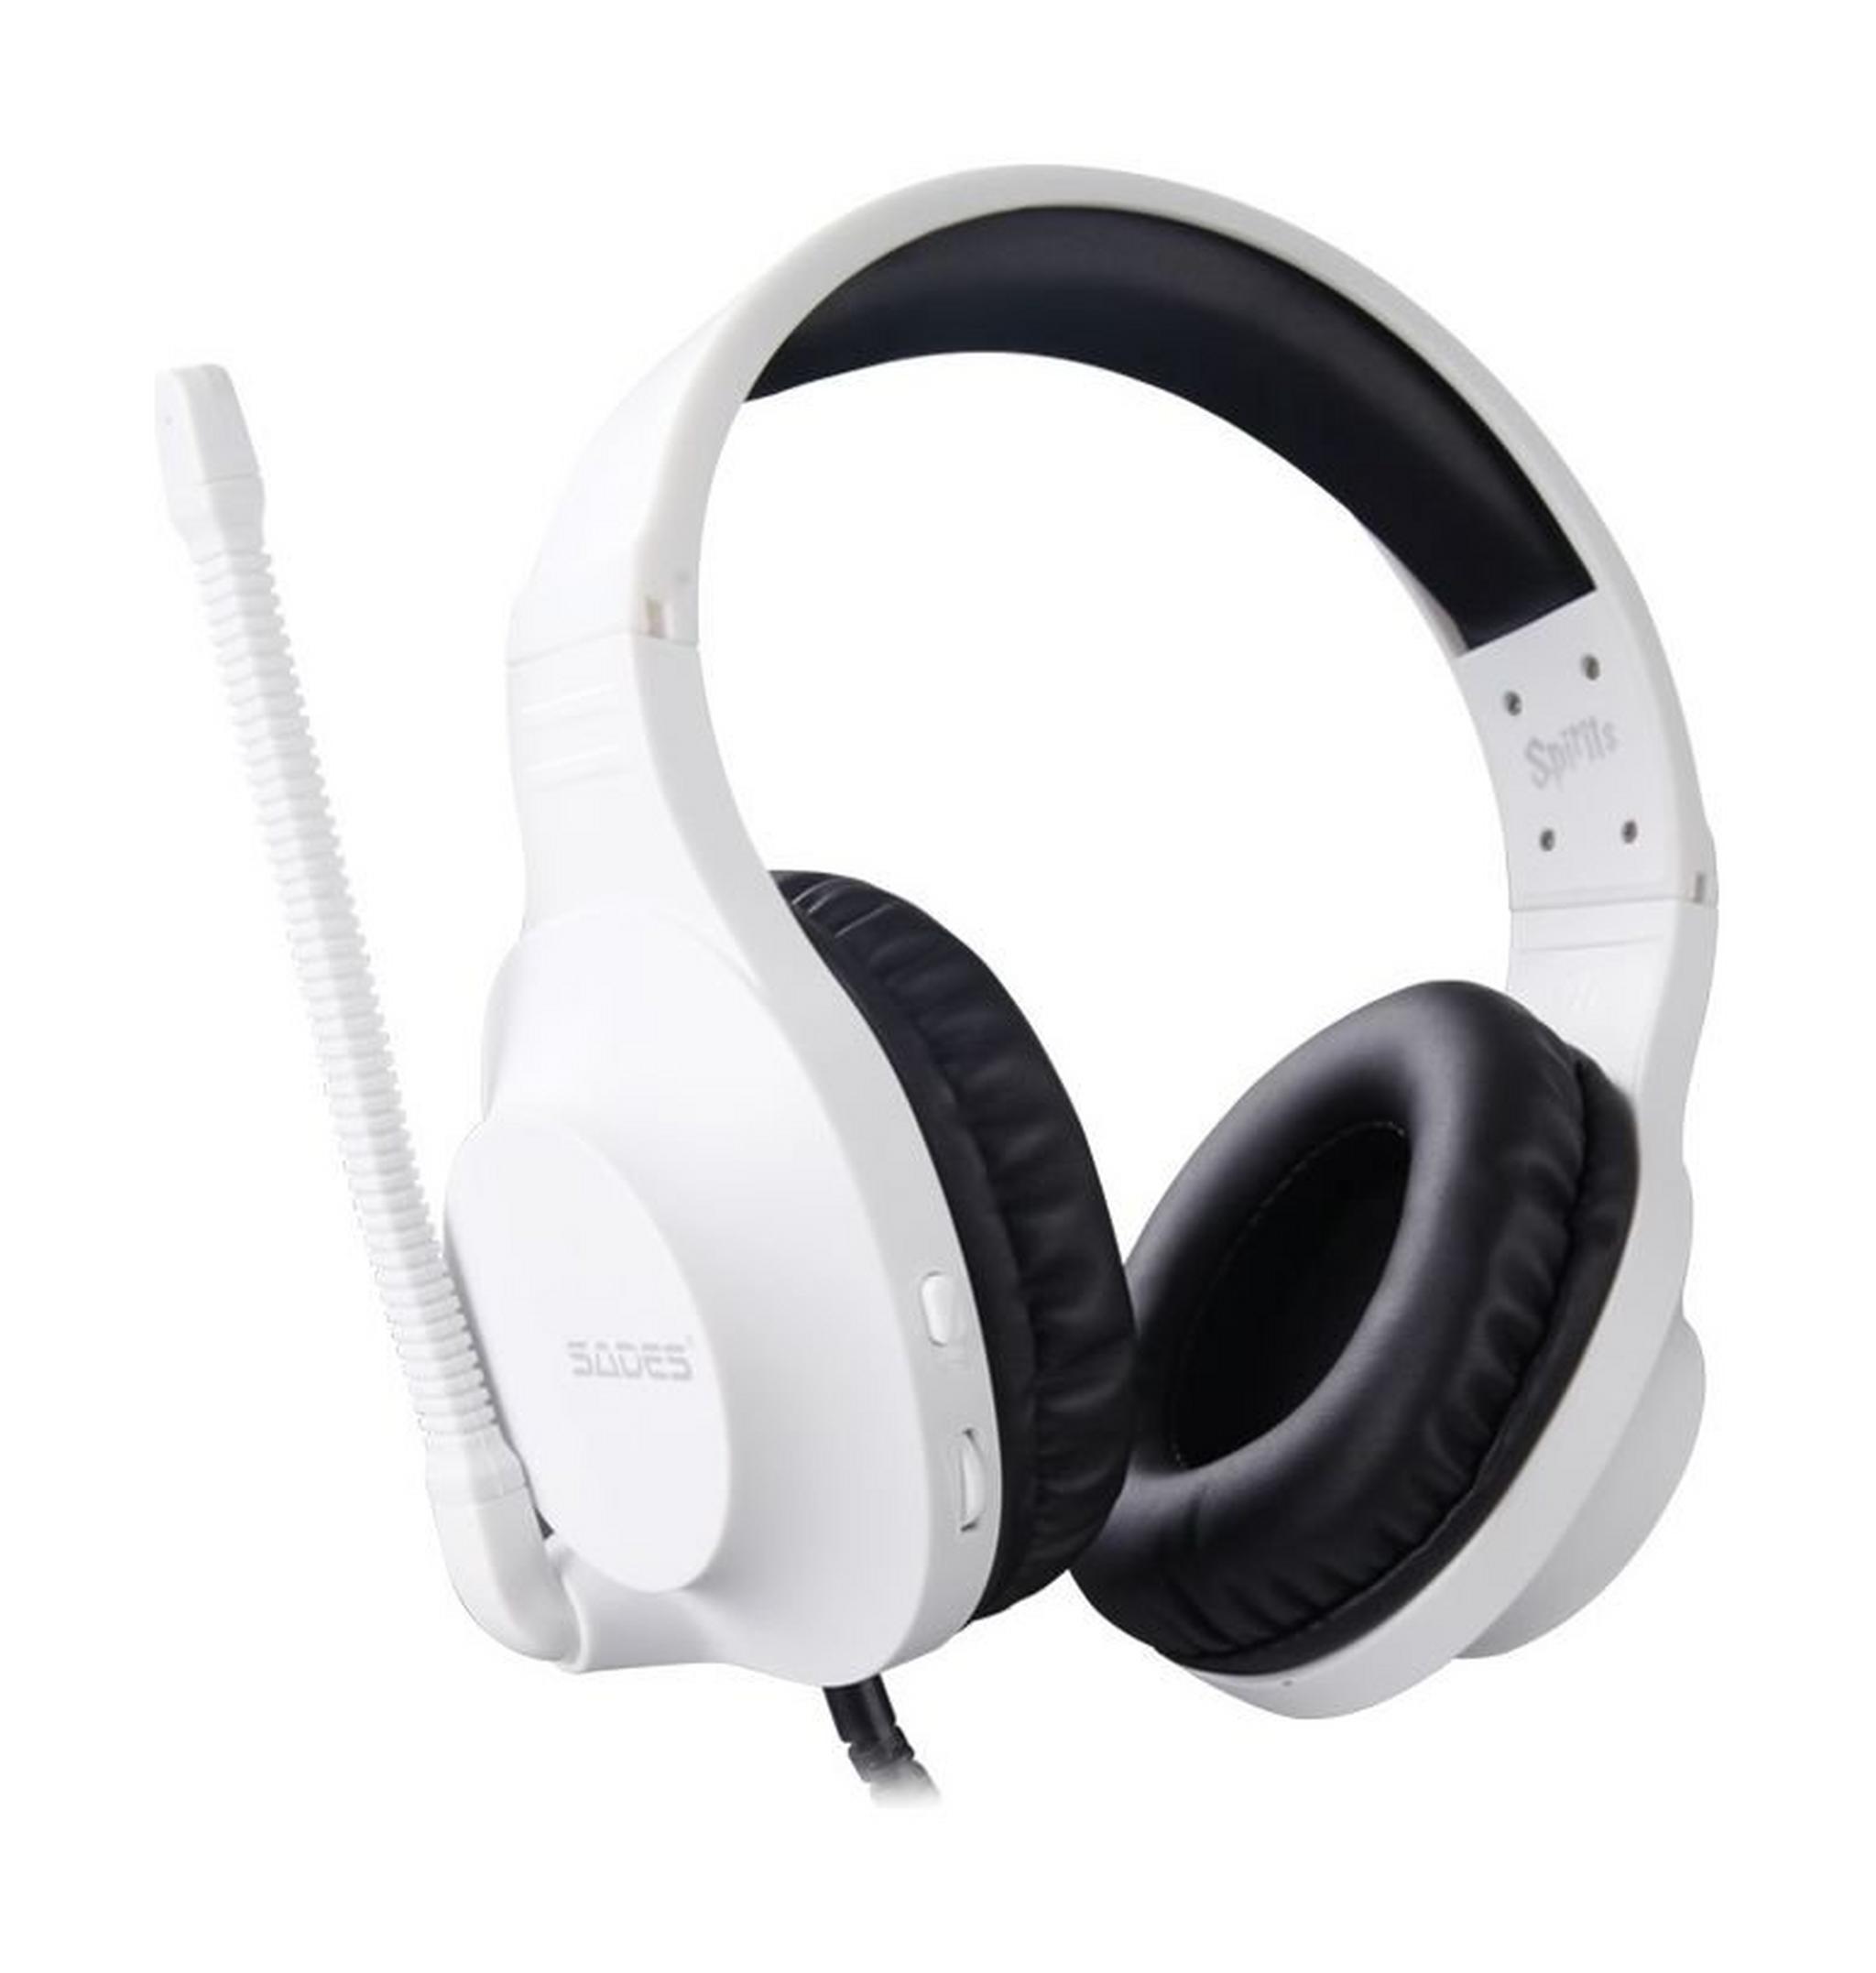 Sades Spirits Wired Gaming Headset - White